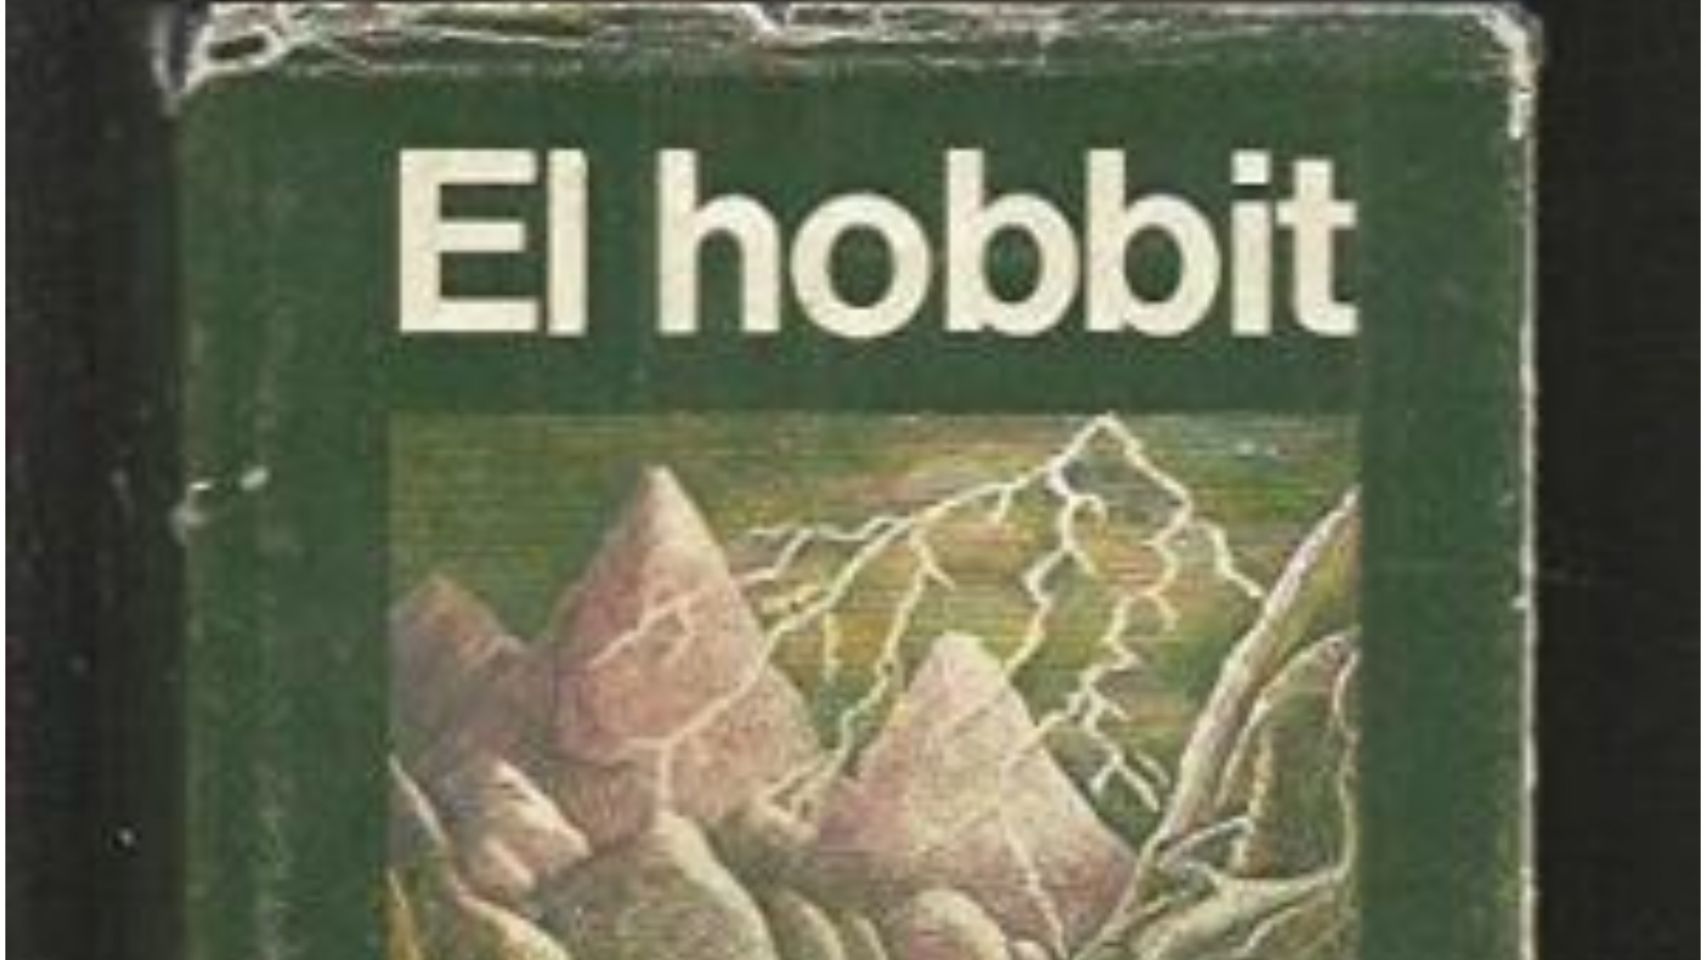 Ejemplar de la primera edición de "El Hobbit" en castellano.